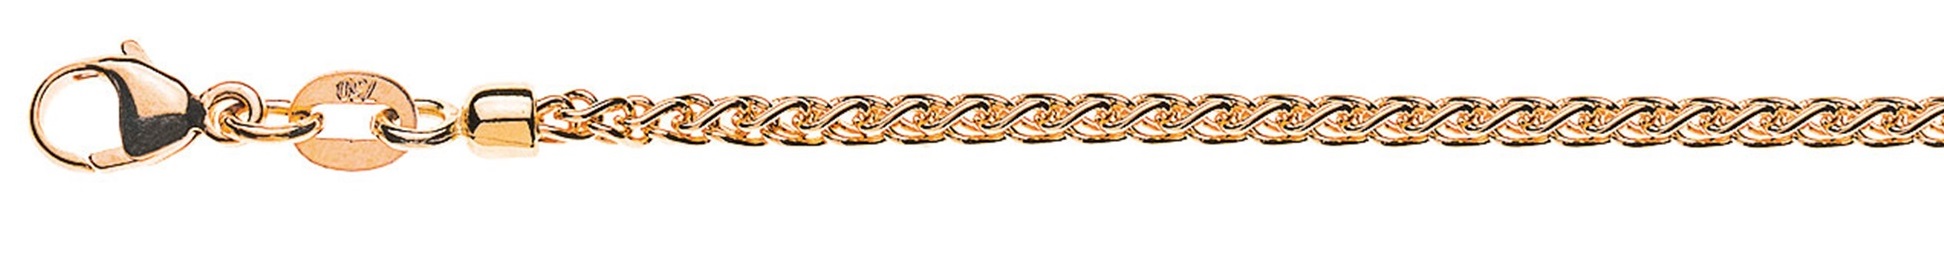 AURONOS Prestige Necklace rose gold 18K cable chain 42cm 2.15mm